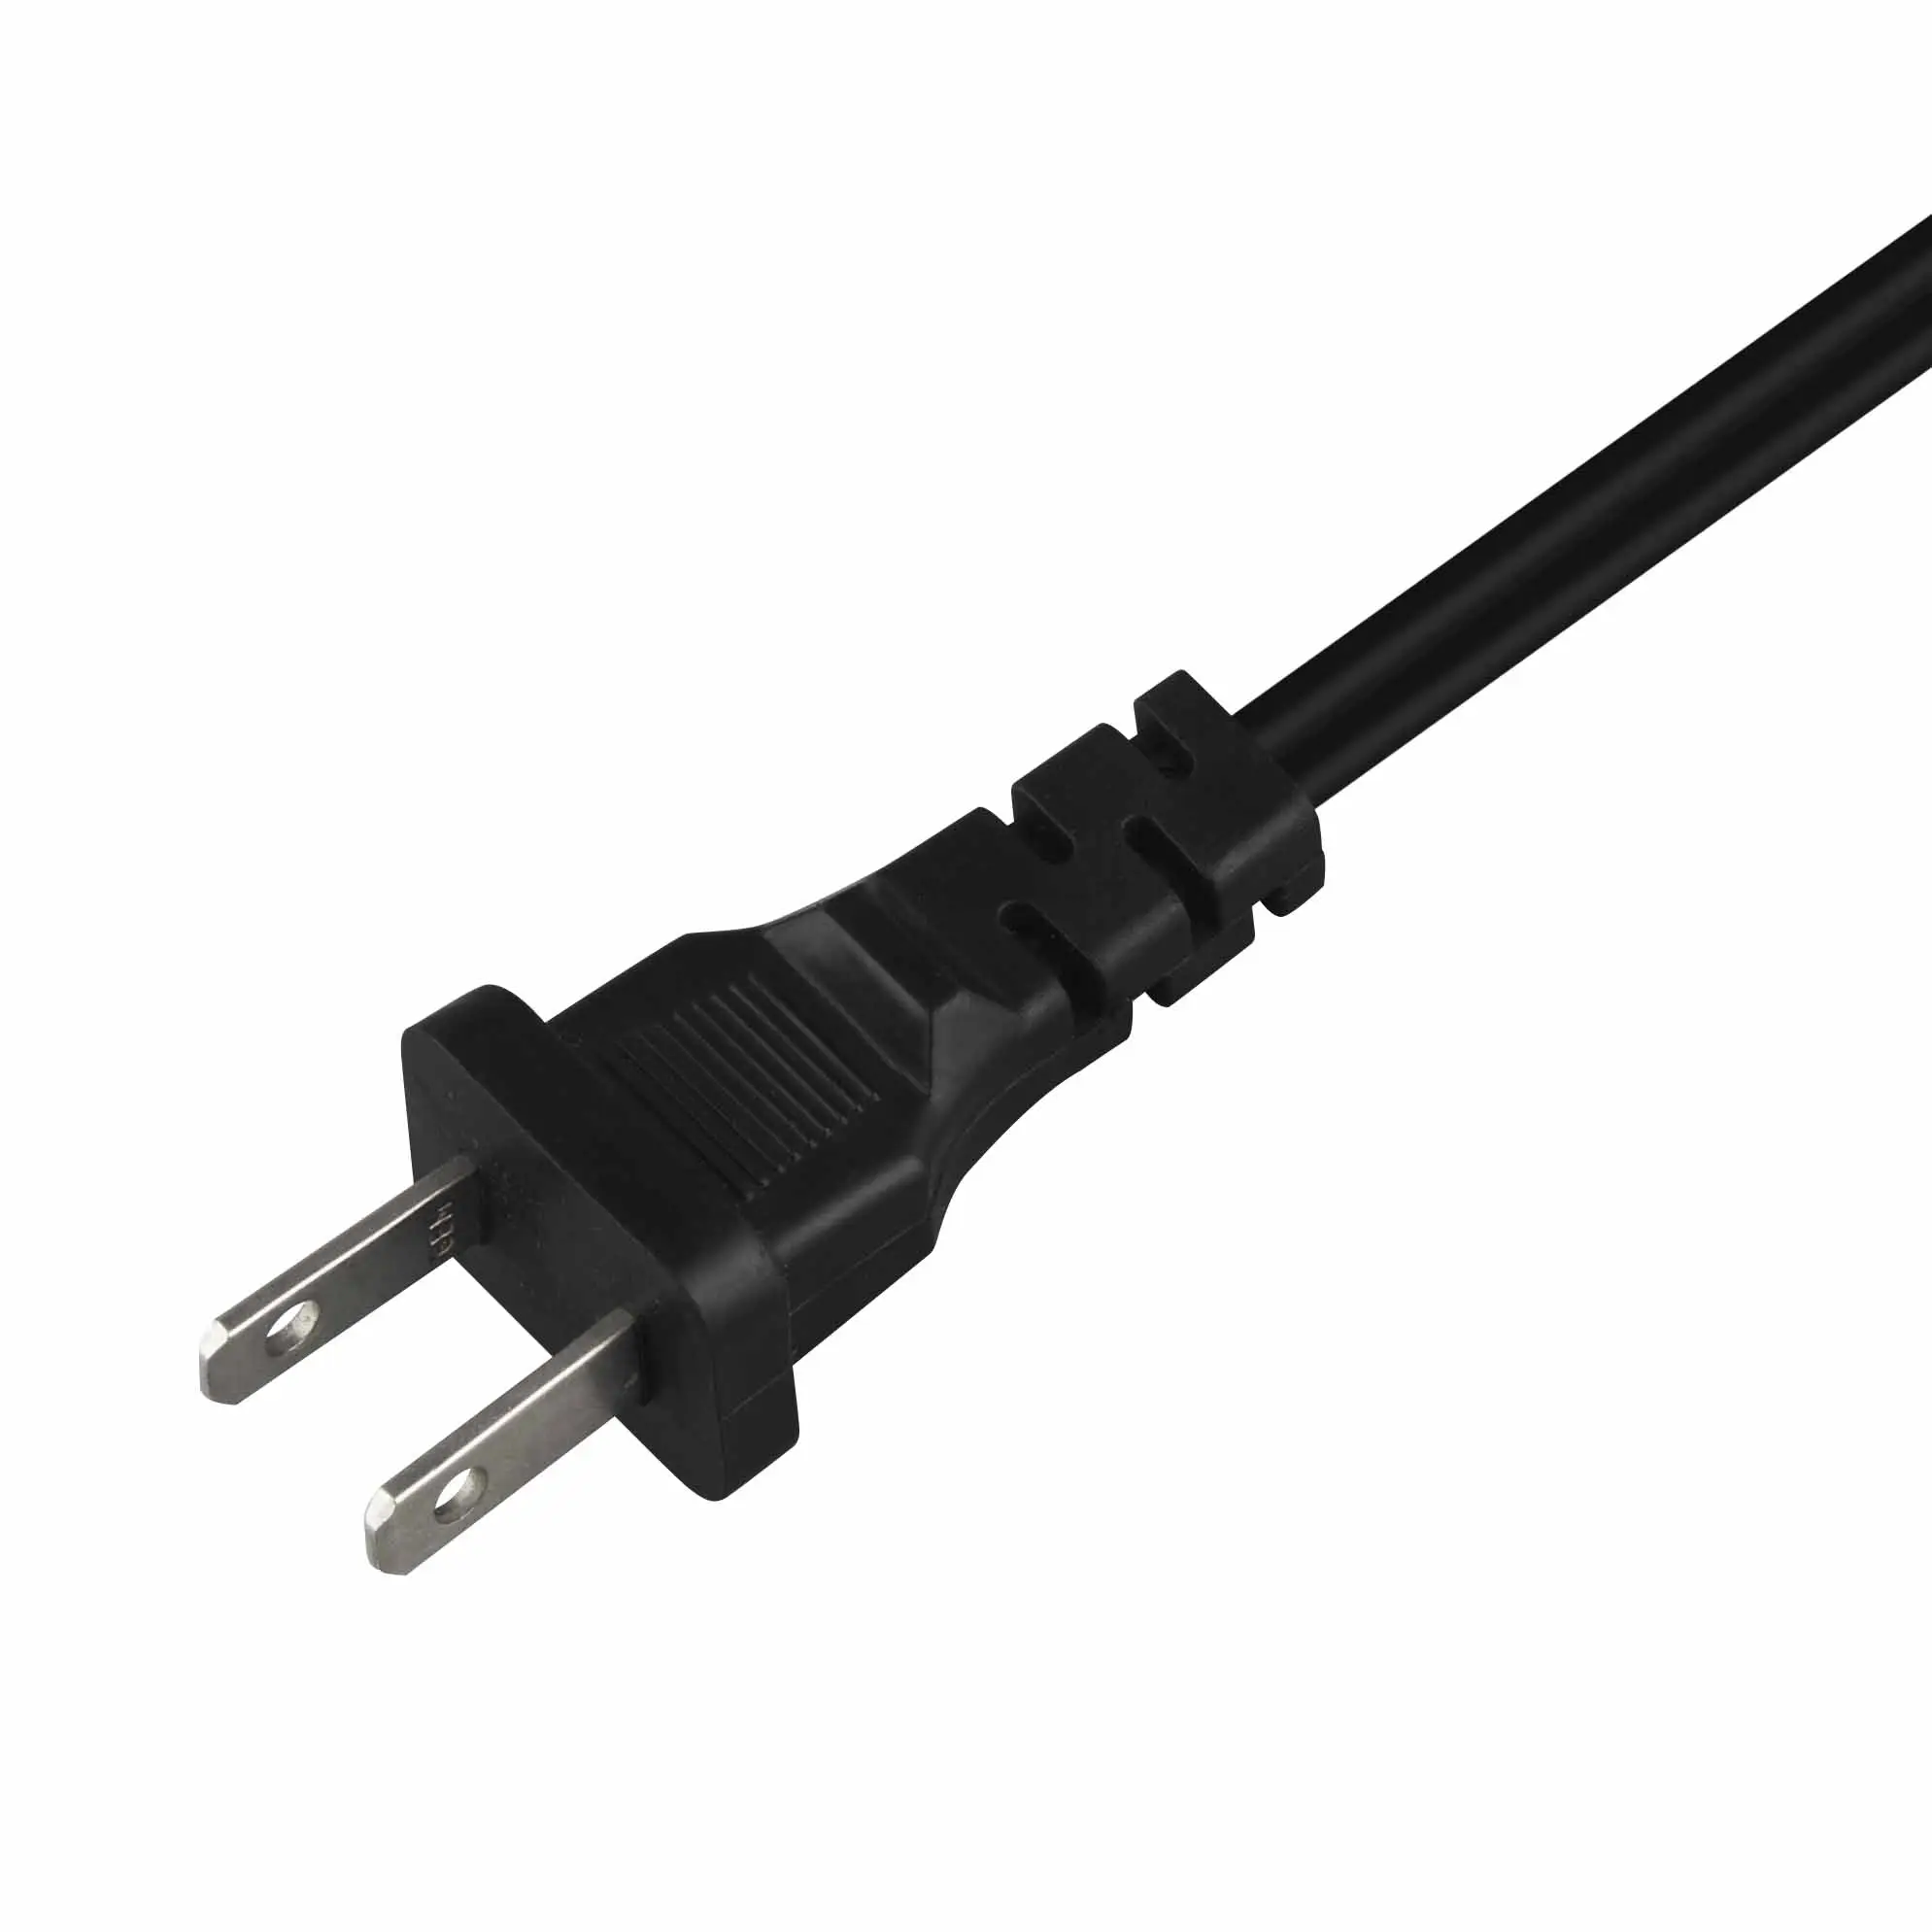 YUYAO,ZHENJIA,USA Standard 2-poliger Stecker spt-2 2 * 18awg 4ft Kupfer kern Kabel ende kann Wechselstrom kabel angepasst werden